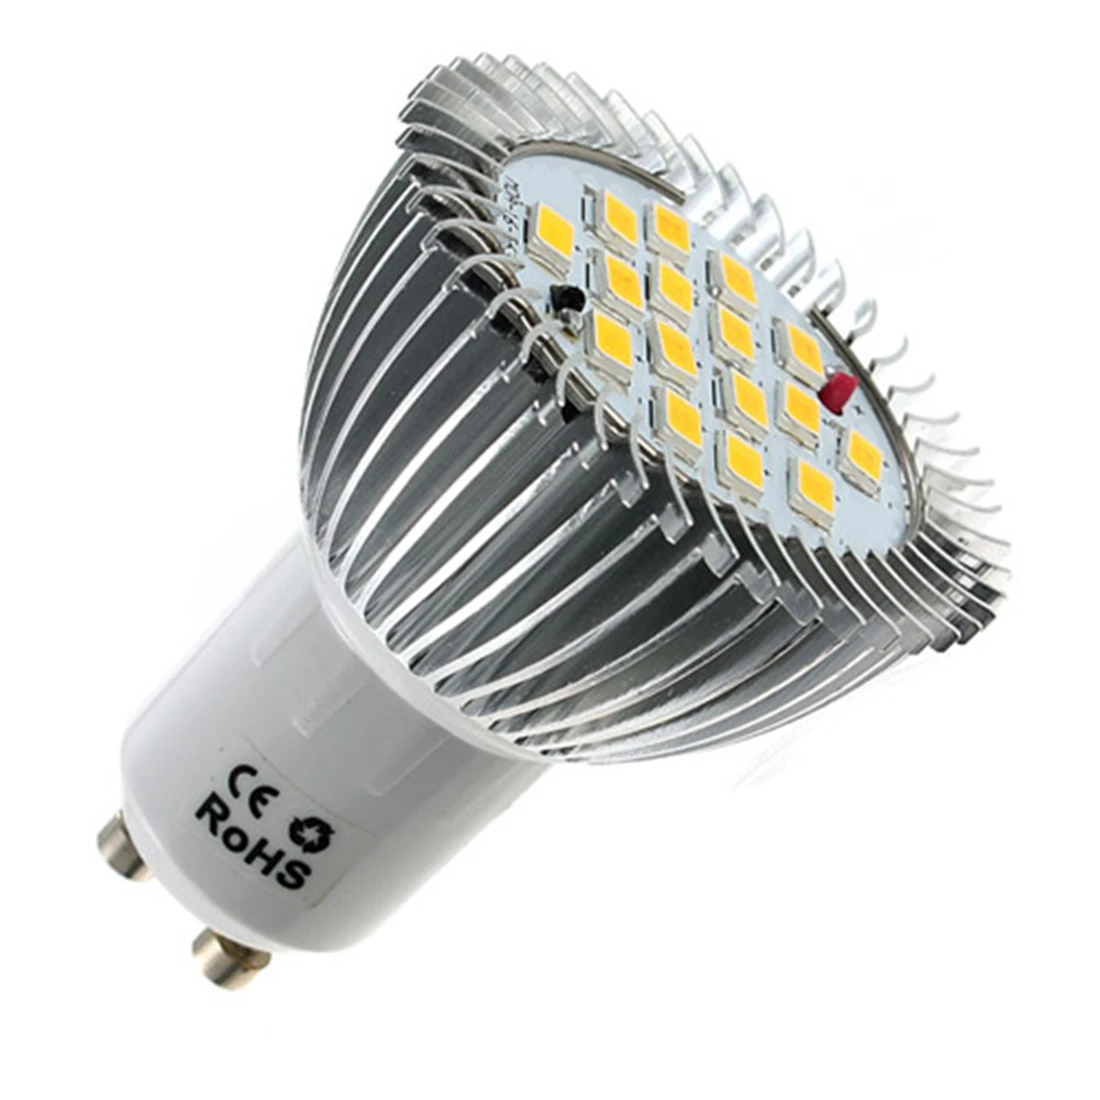 

6.4W LED Light Bulb GU10 16 LED 5630 SMD Energy Saving Lamp Bulb Spotlight Spot Lights Bulbs Warm White Lighting AC 85-265V